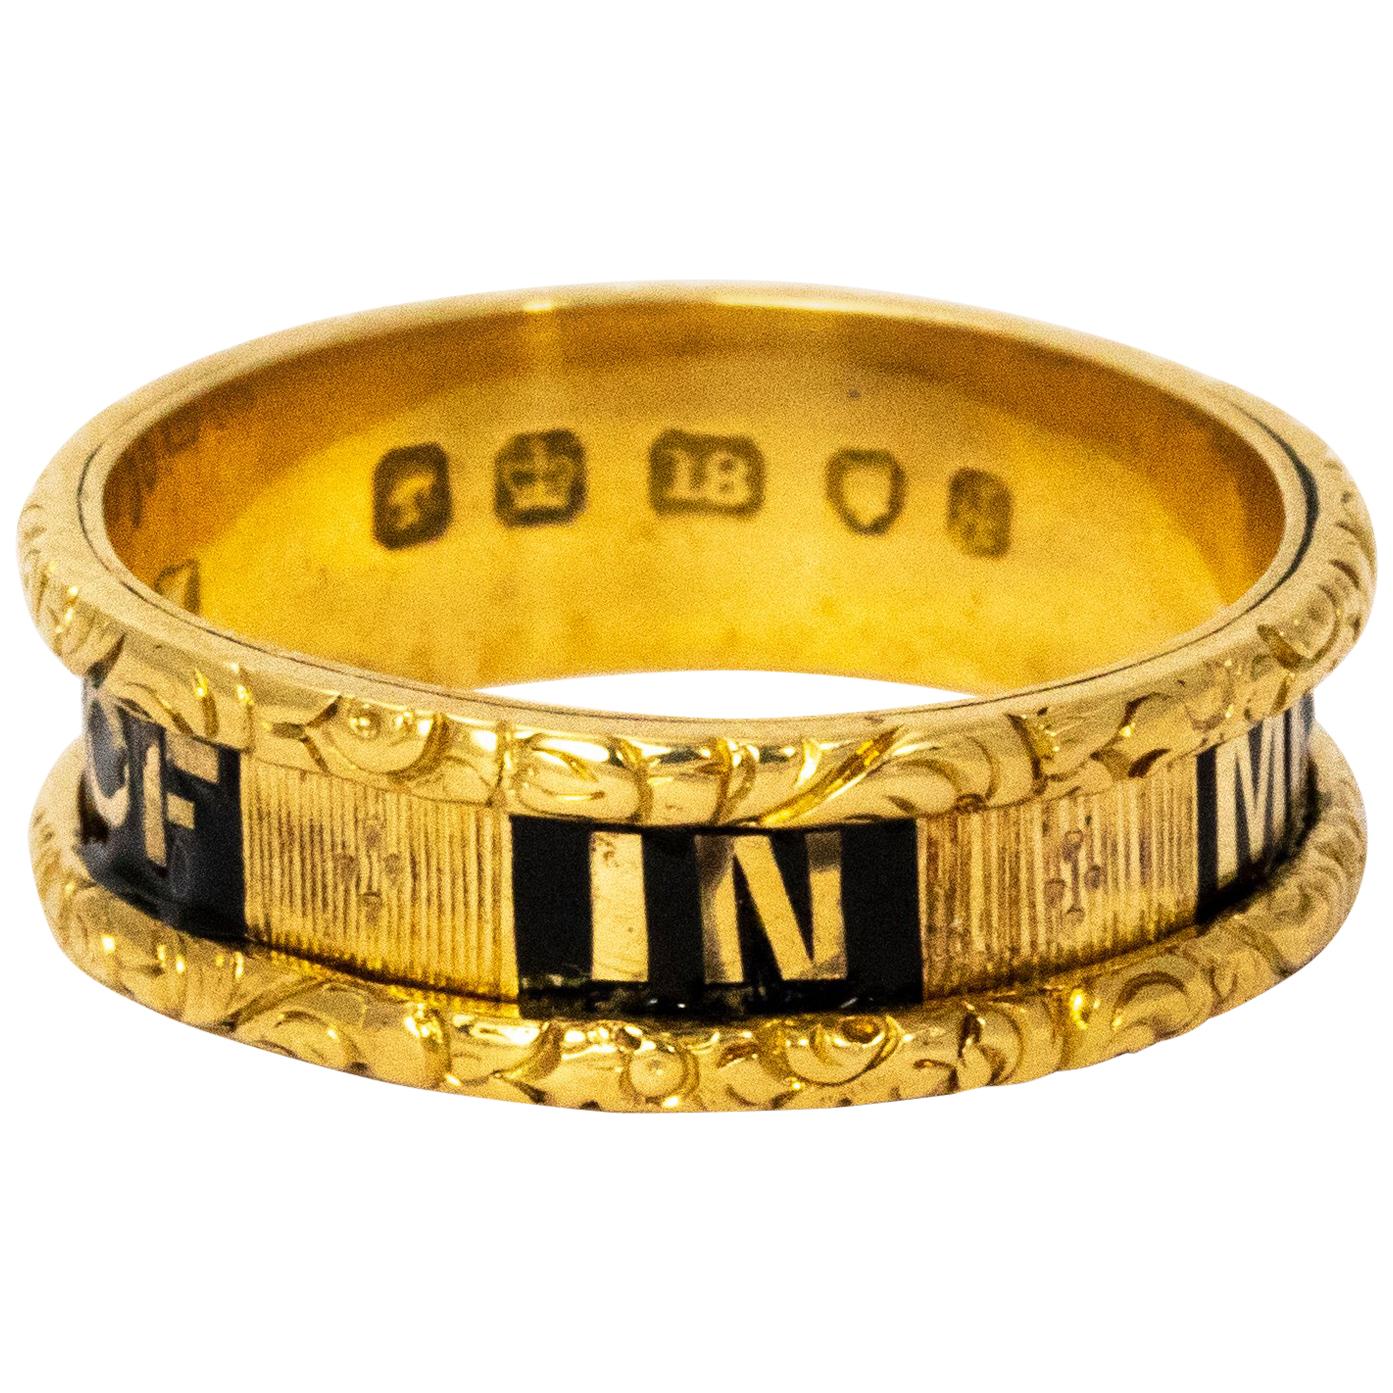 Georgian 18 Karat Yellow Gold "In Memory Of" Mourning Ring